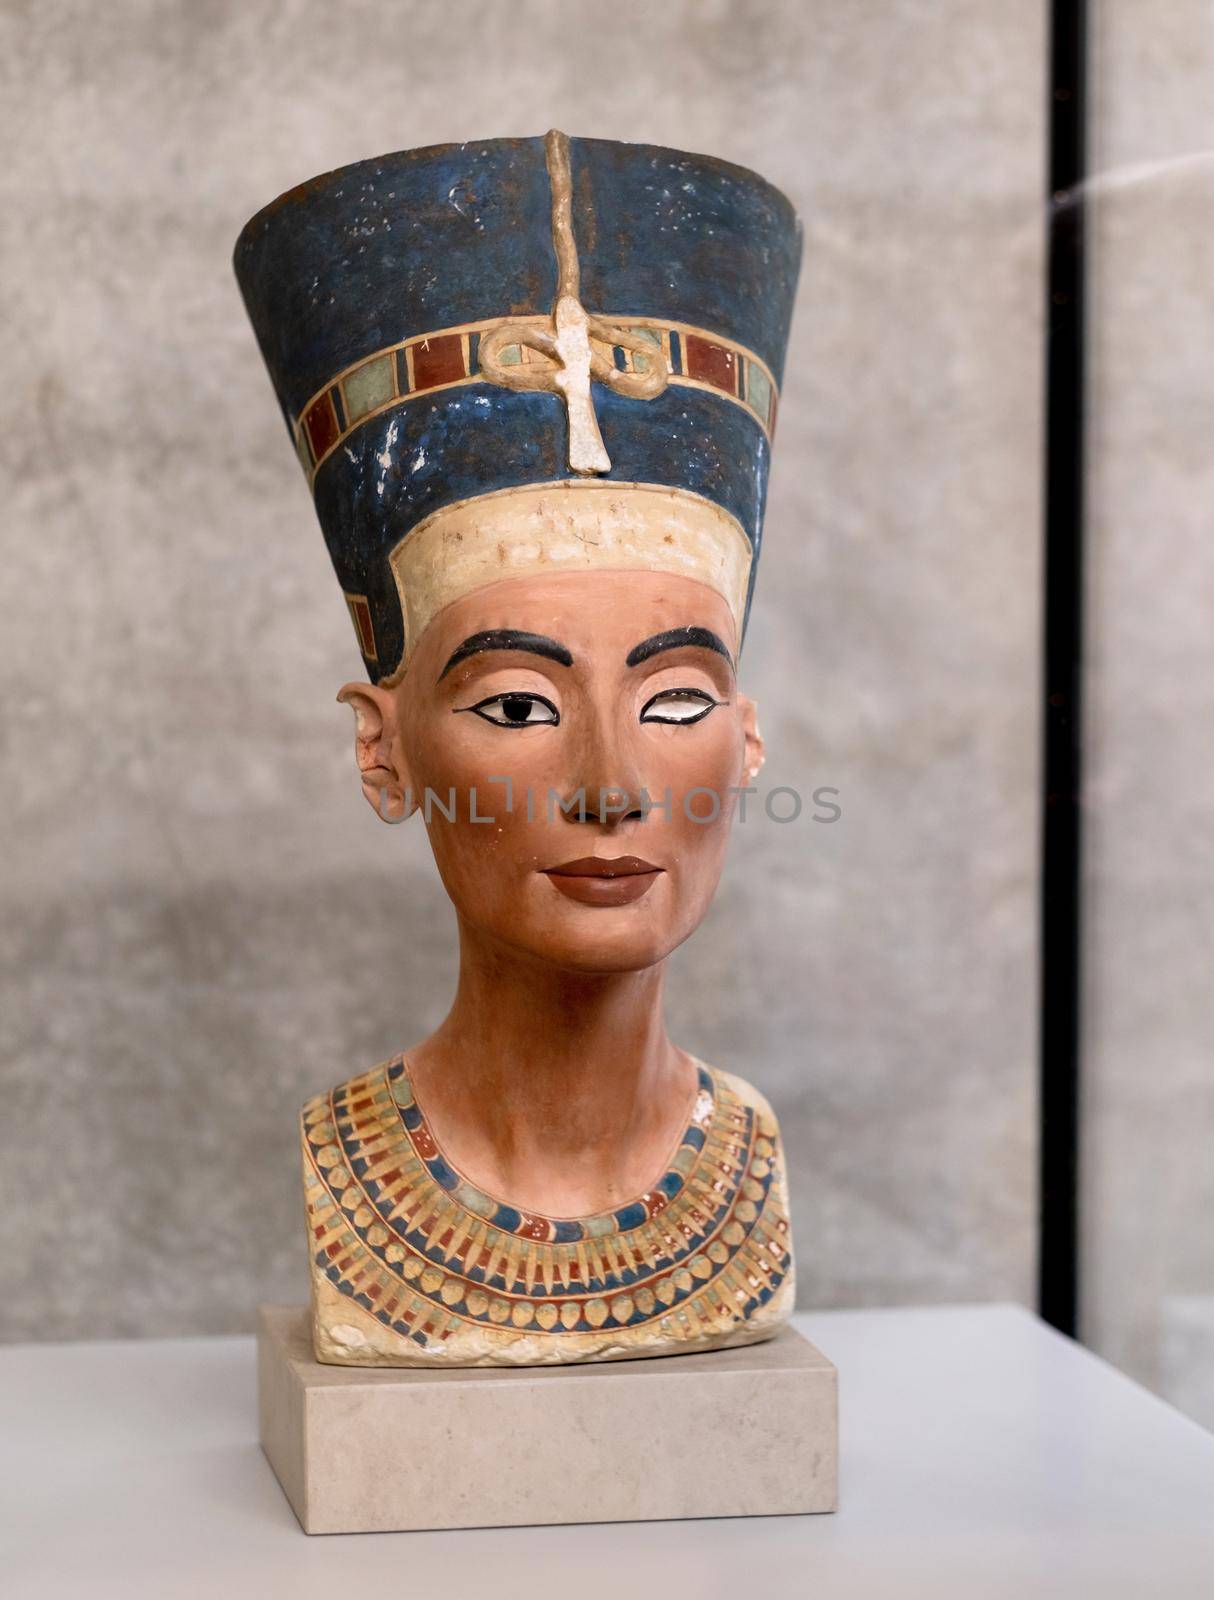 Nefertiti in Neues Museum by GekaSkr